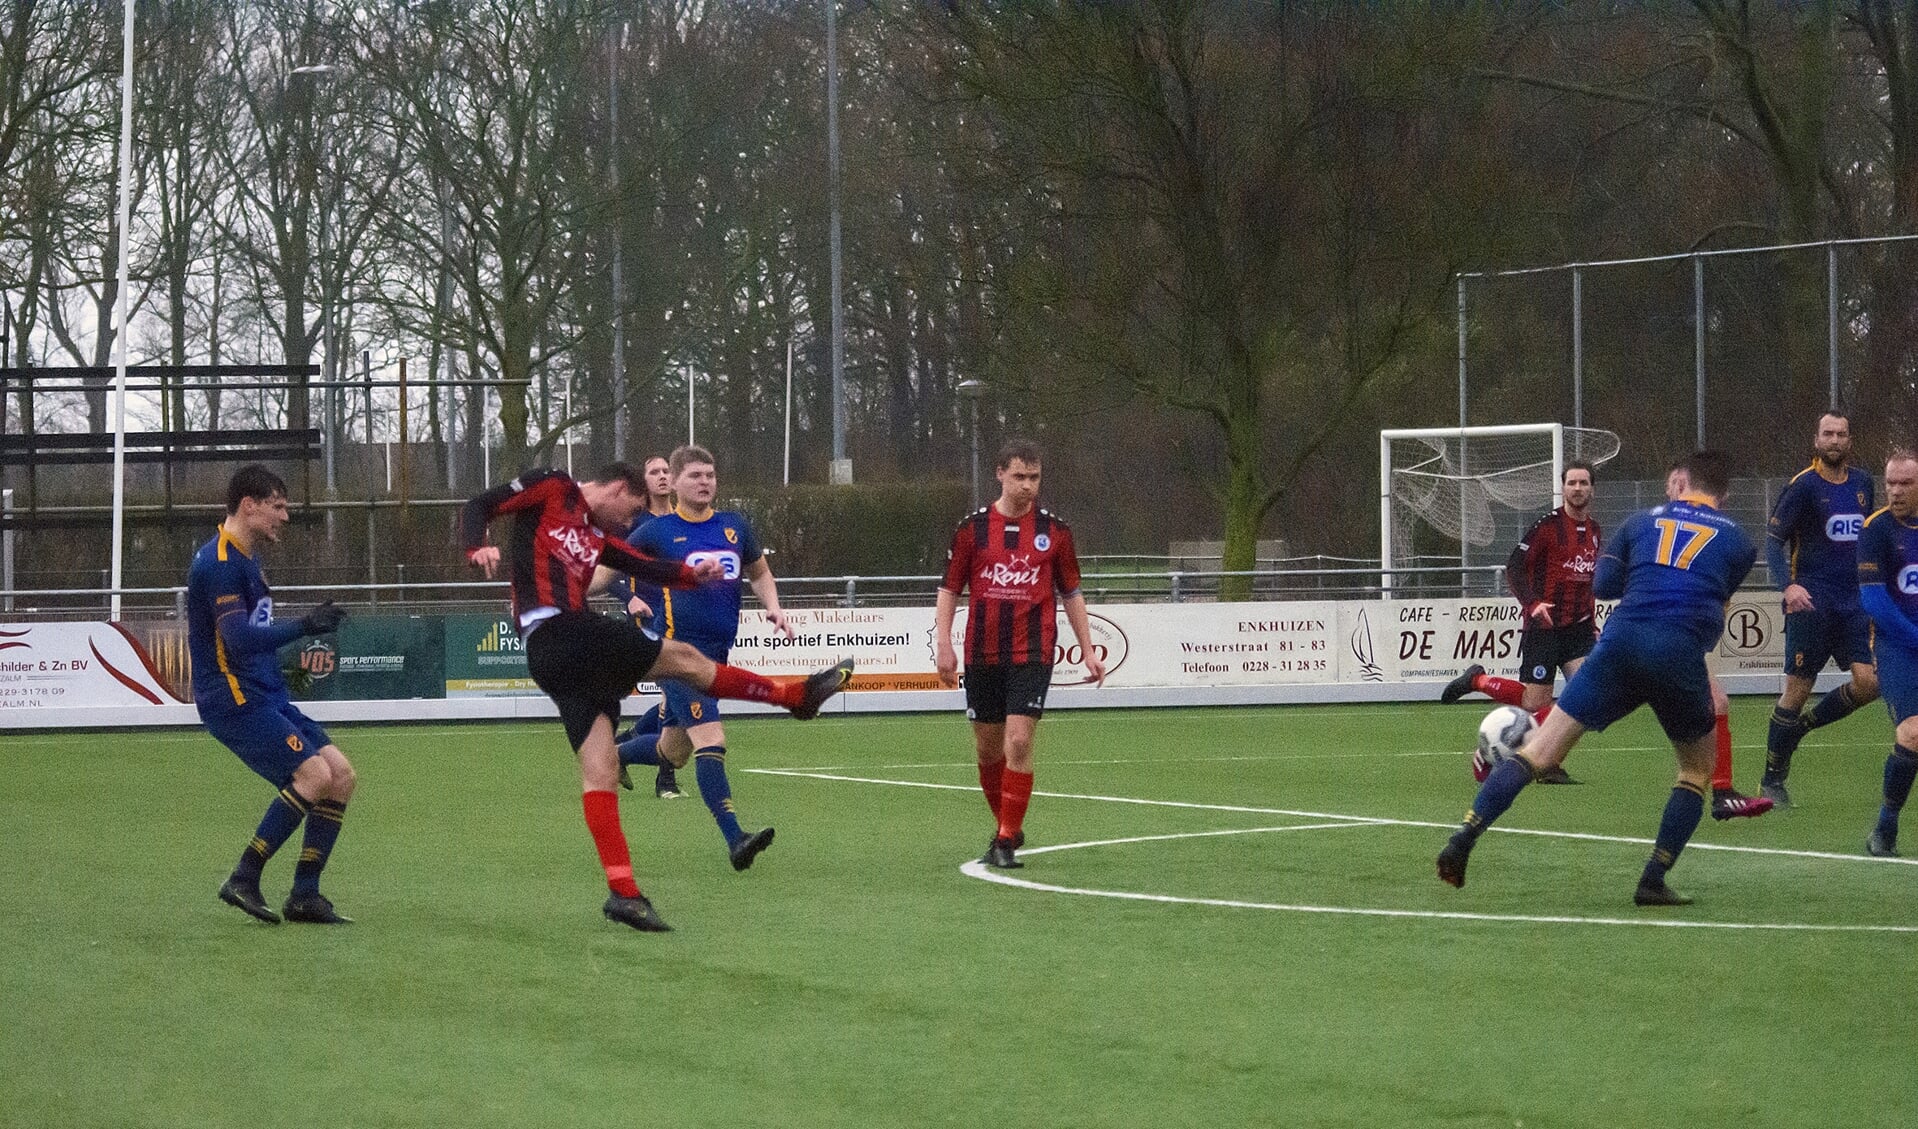 Martijn Kuijs haalde verwoestend uit en scoorde de 0-3 